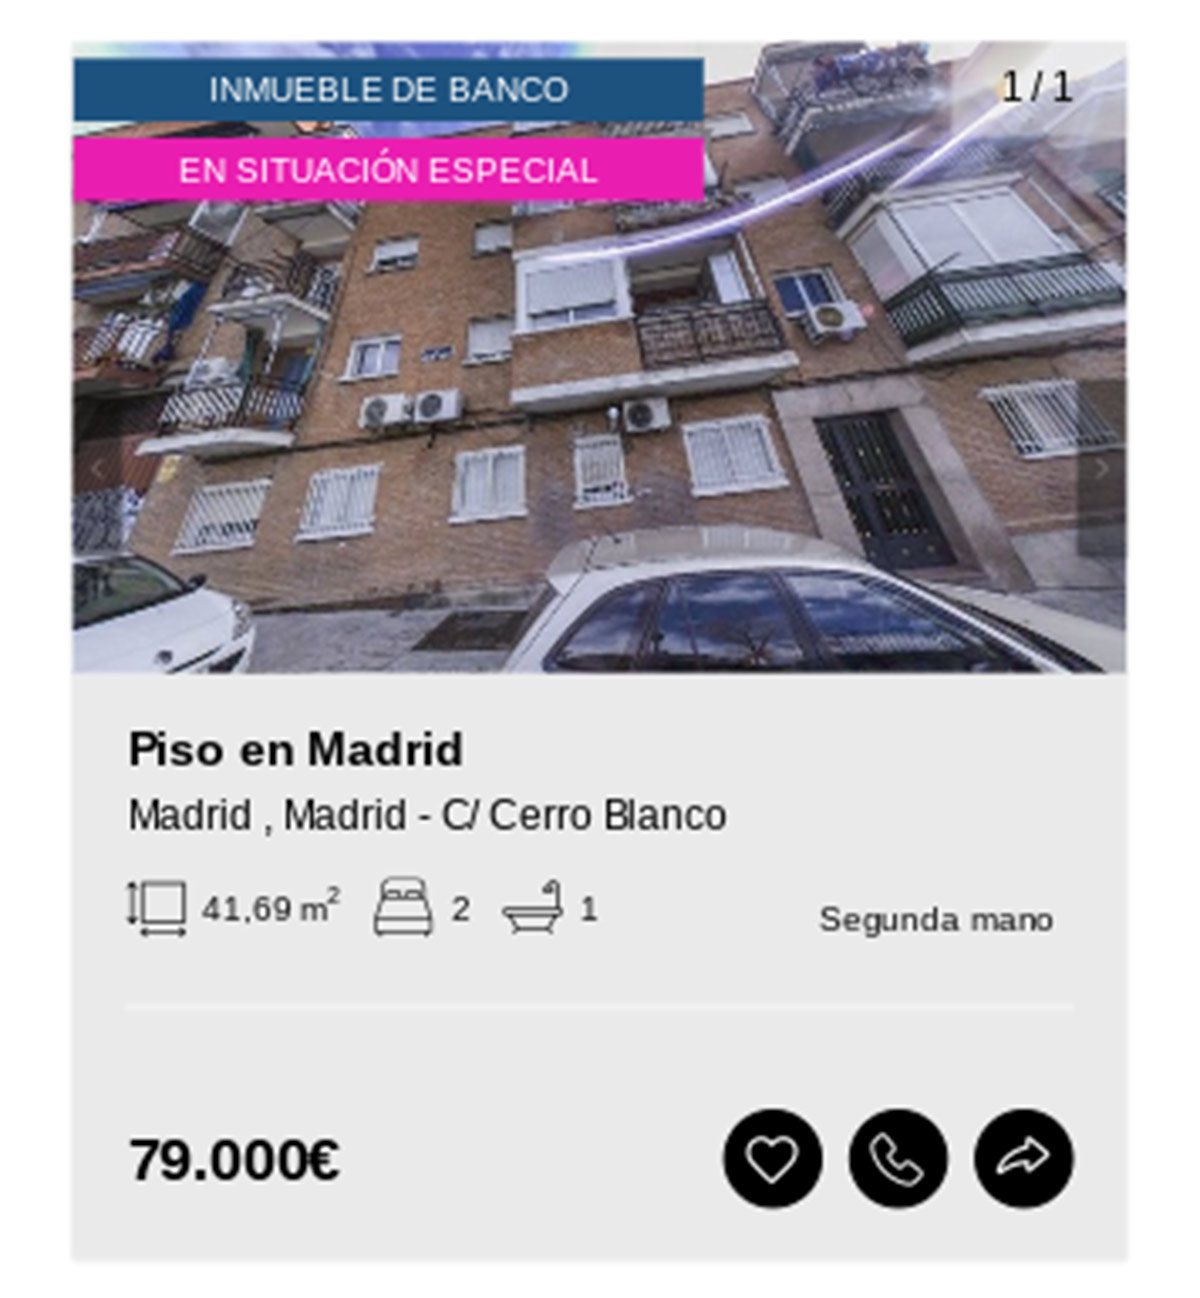 Piso en Madrid de Solvia por 79.000 euros